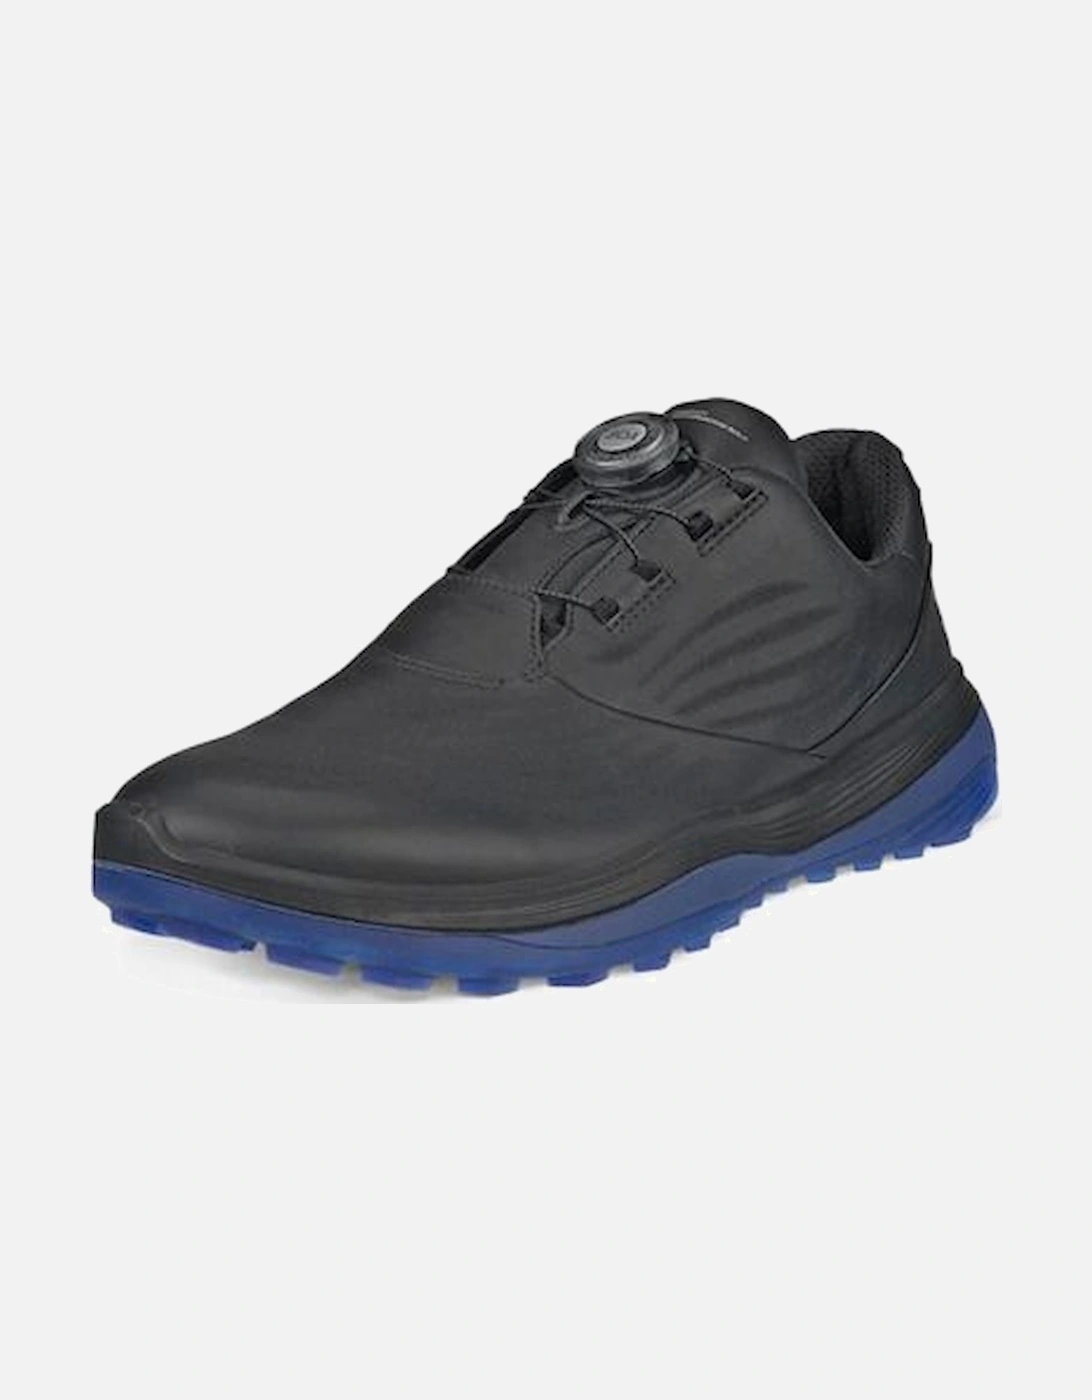 Golf Lt1 132274-01001 Mens Golf black leather shoe, 8 of 7